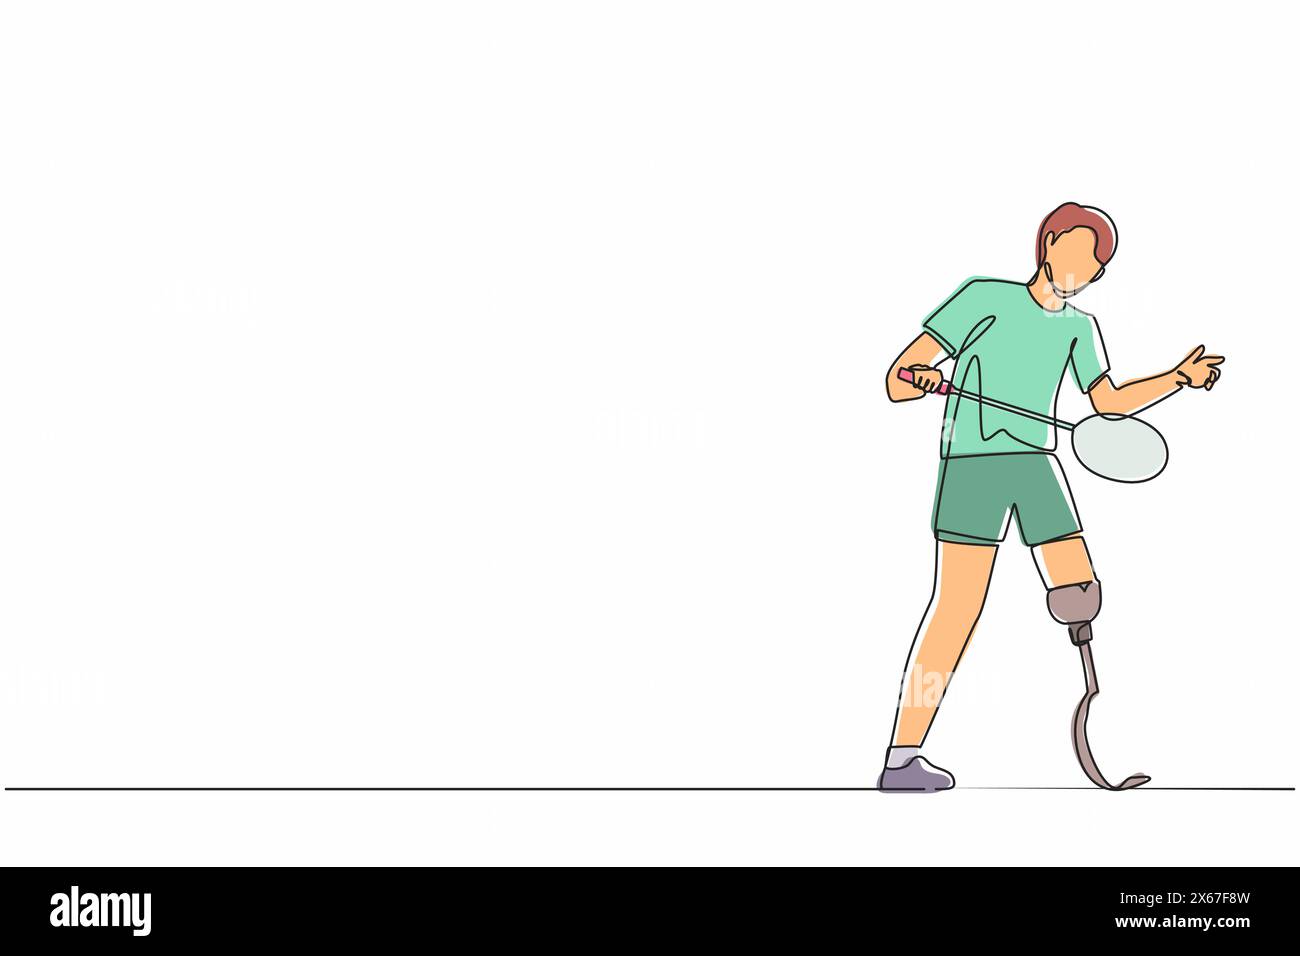 Un athlète masculin dessinant une ligne continue jouant au badminton. homme avec une jambe prothétique tenant la raquette. Personne handicapée effectuant des activités sportives Illustration de Vecteur